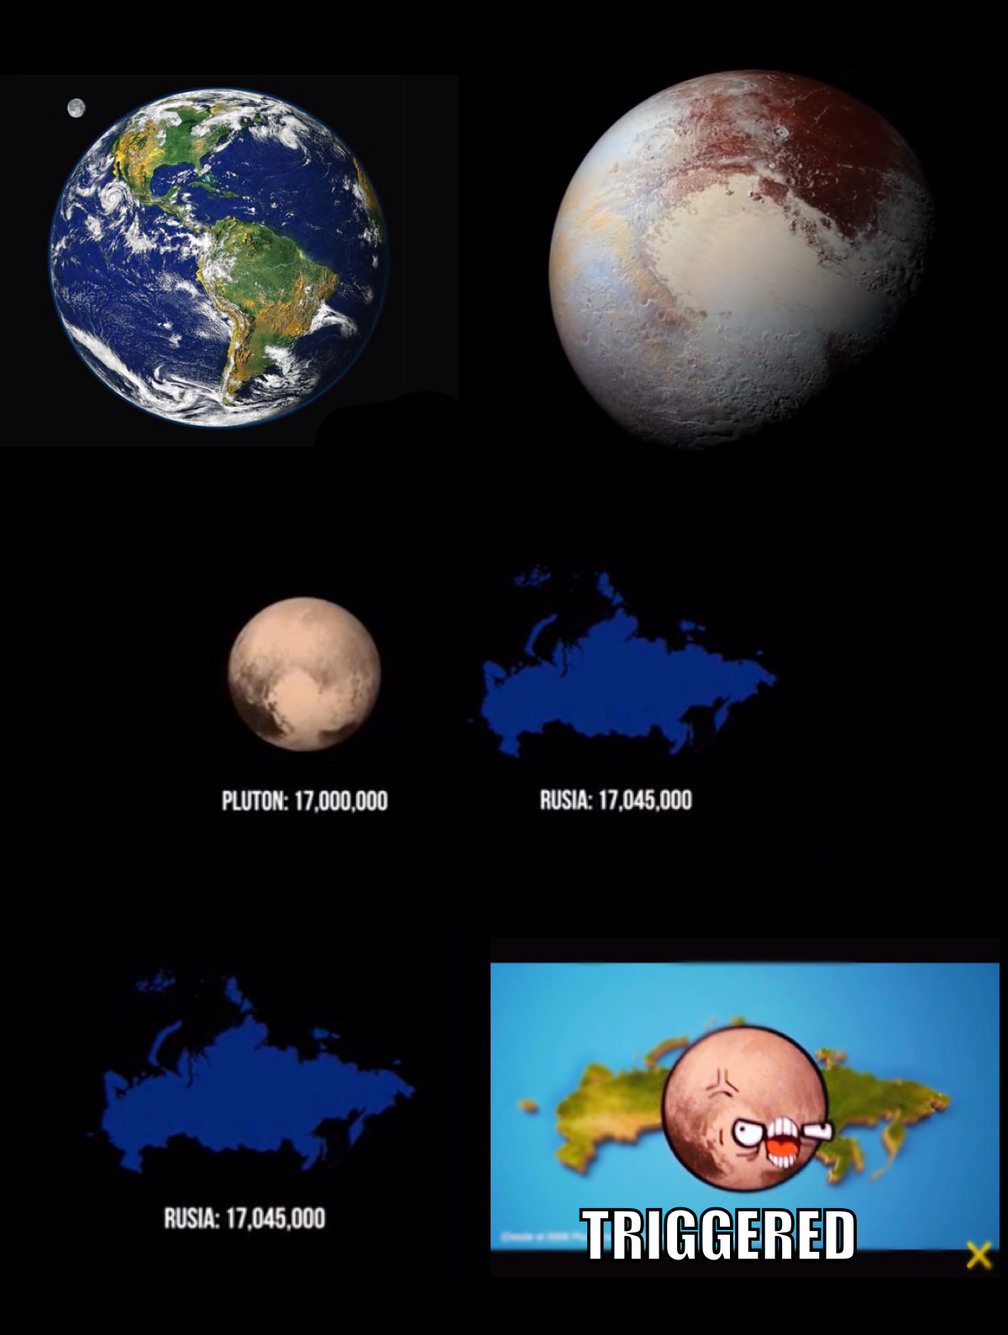 Rusia más grande que Plutón... - meme